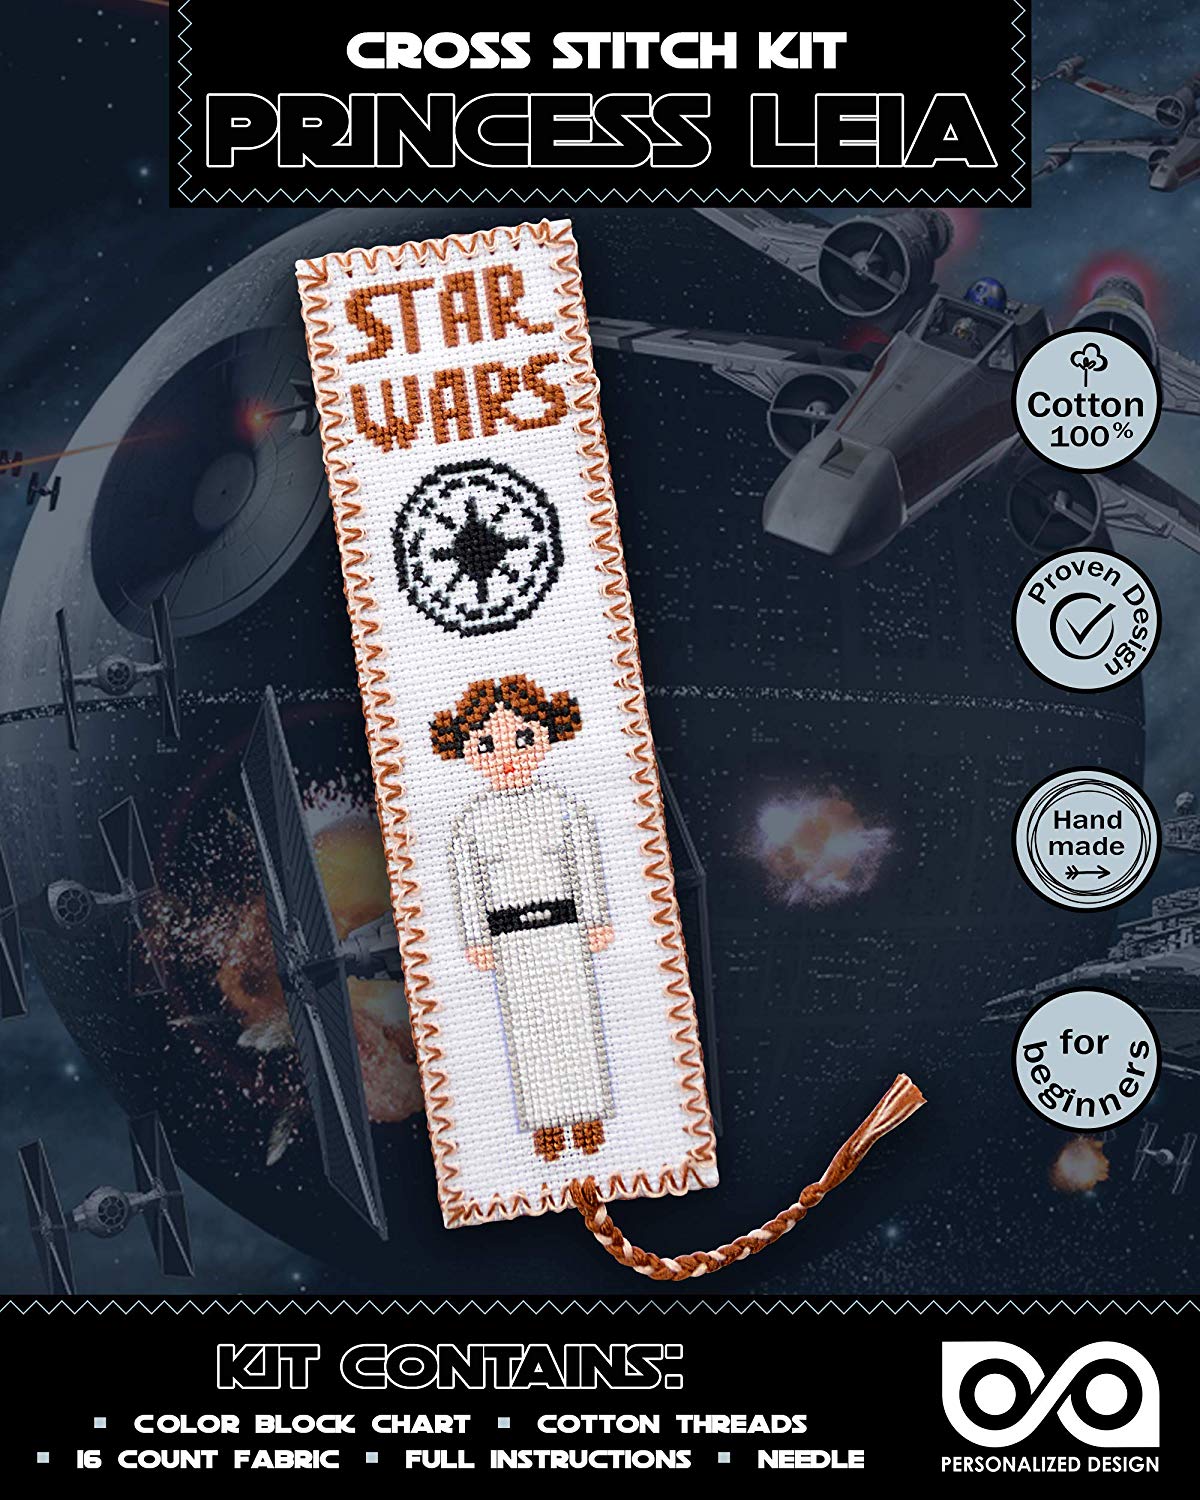 Cross Stitch Kits 'Star Wars' Princess Leia